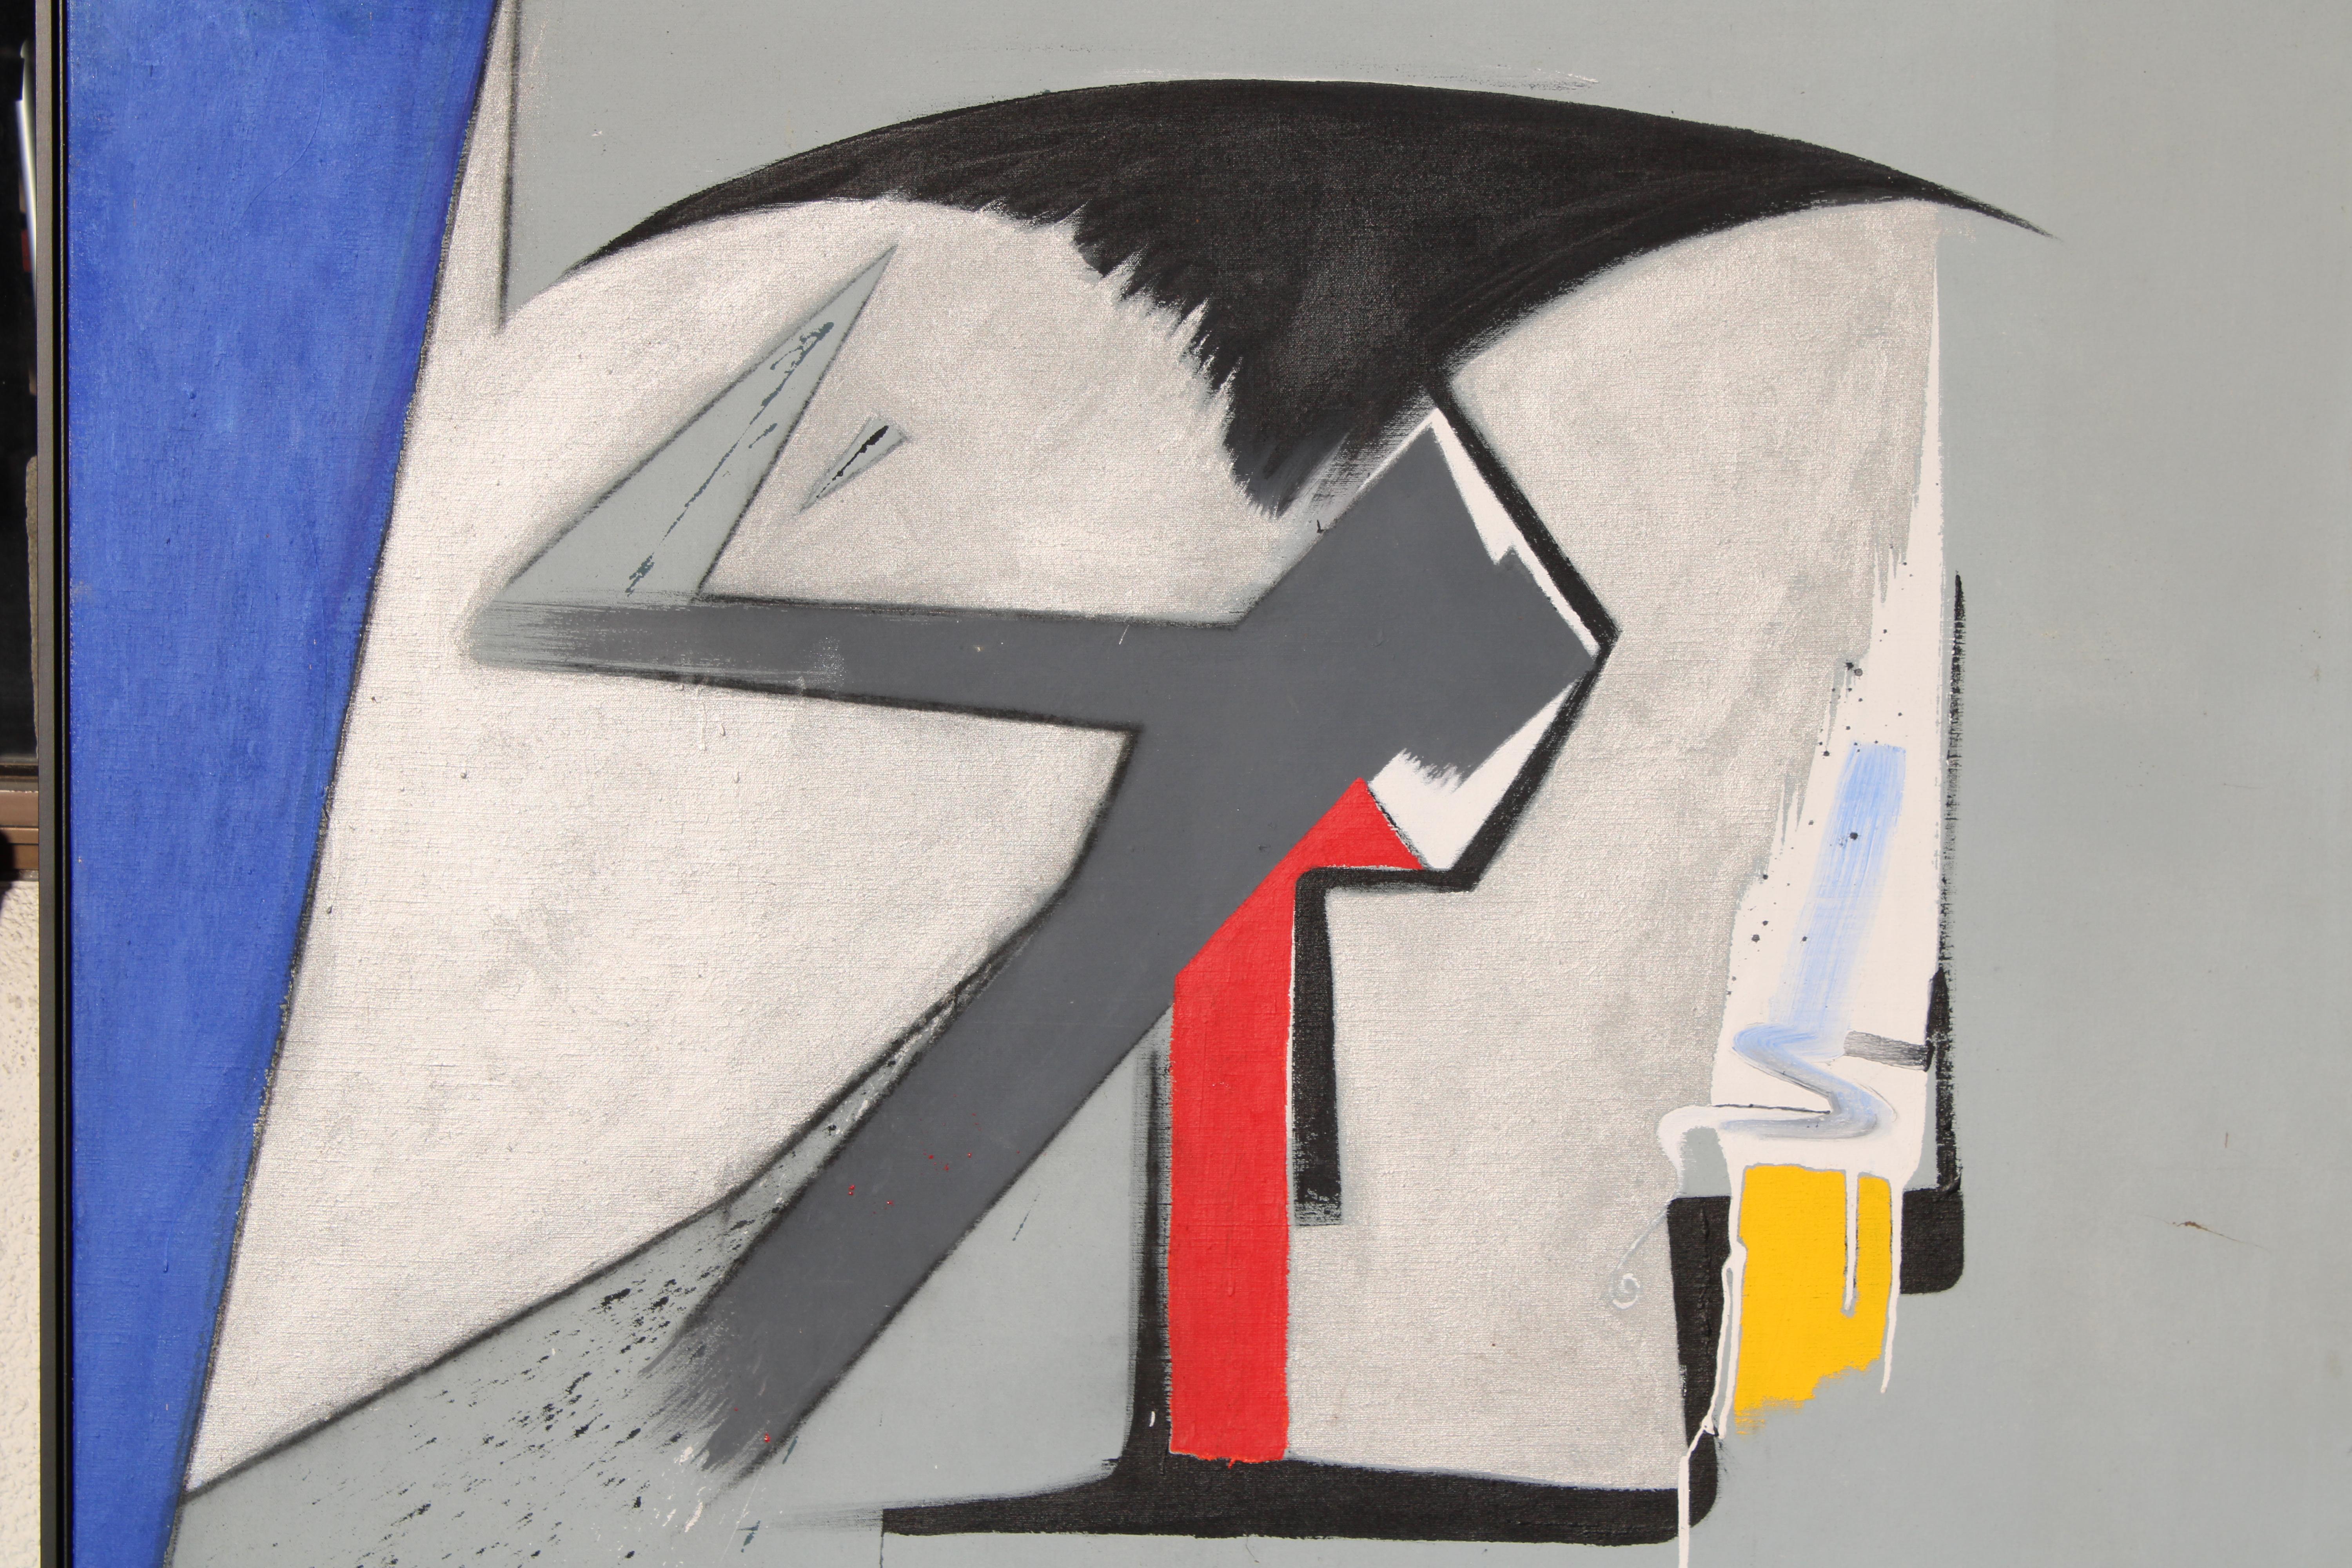 Abstraktes Acryl und Kohle auf Leinwand von Dave Seabury mit dem Titel I Tried To Warn You, You Wouldn't Listen und datiert 10-1-92.  Das Gemälde ist 47